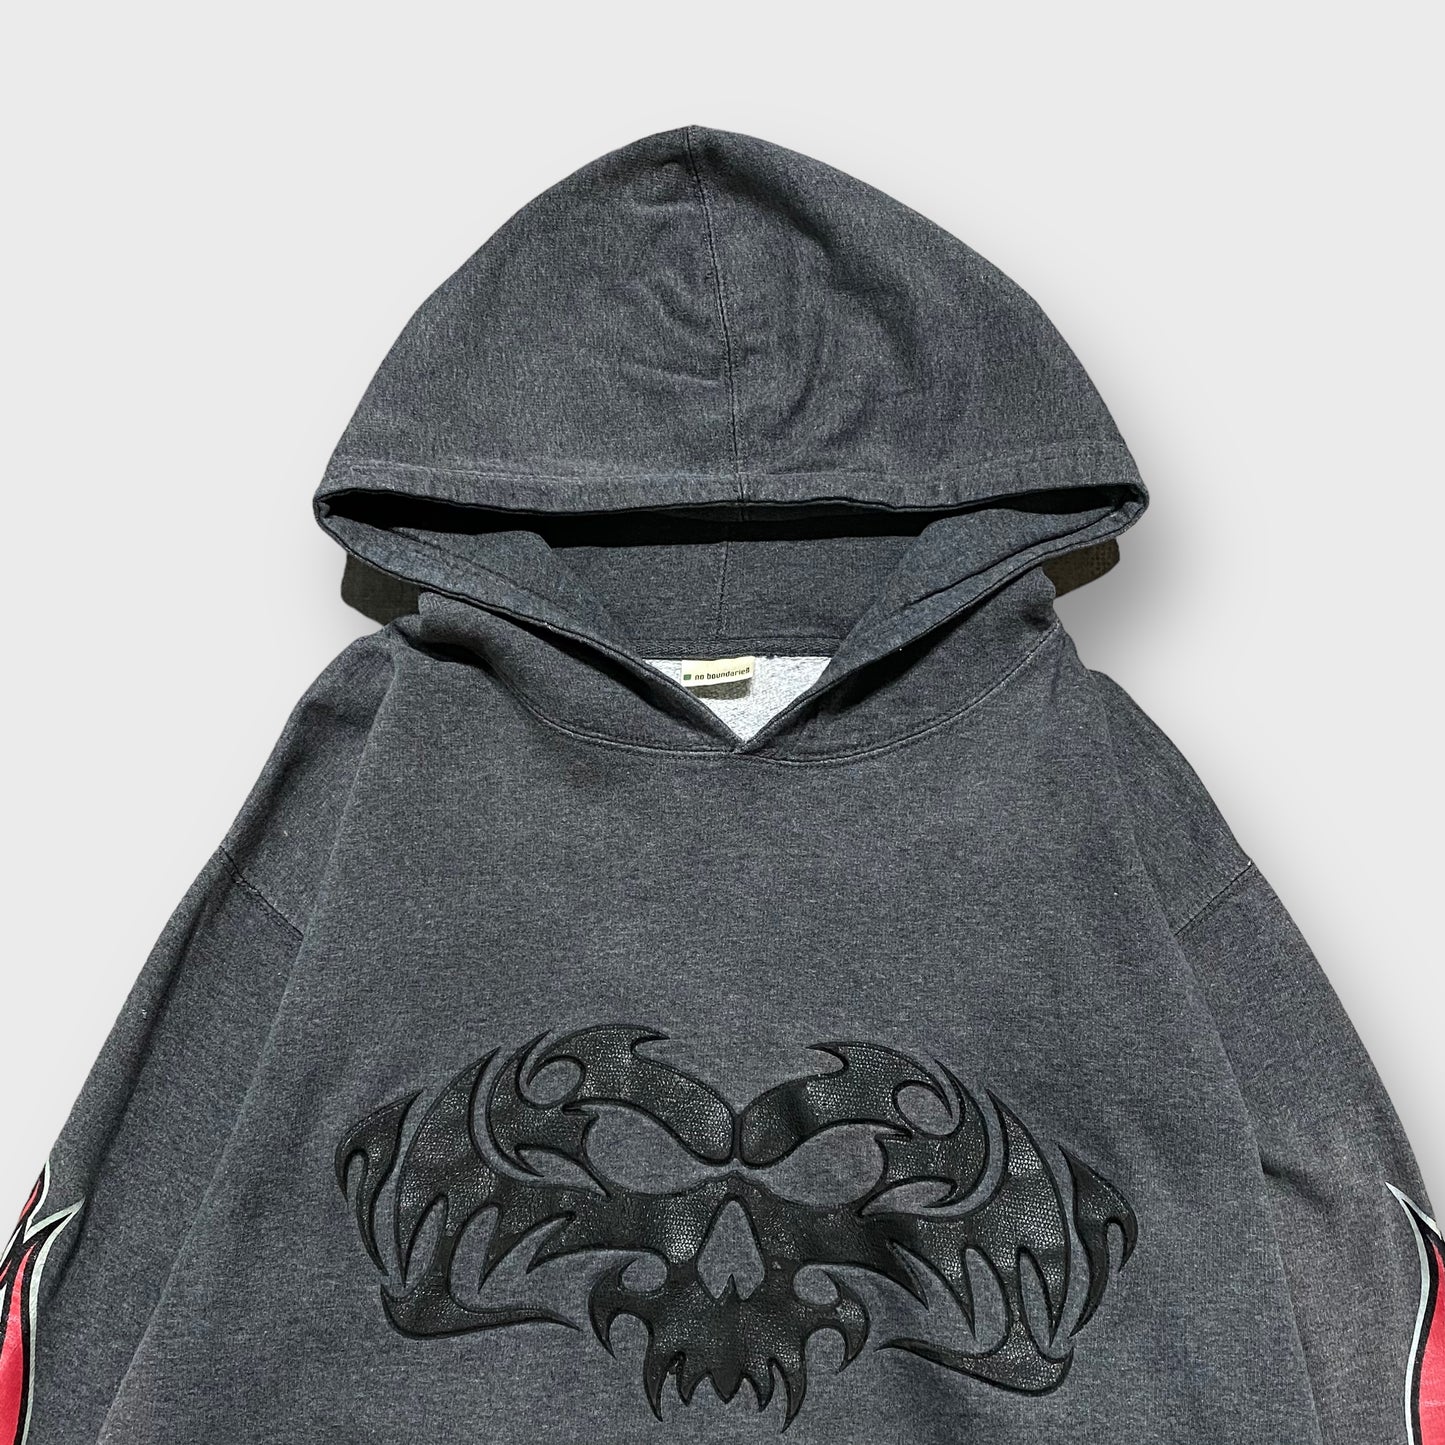 "NO BAUNDARIES" Skull design hoodie